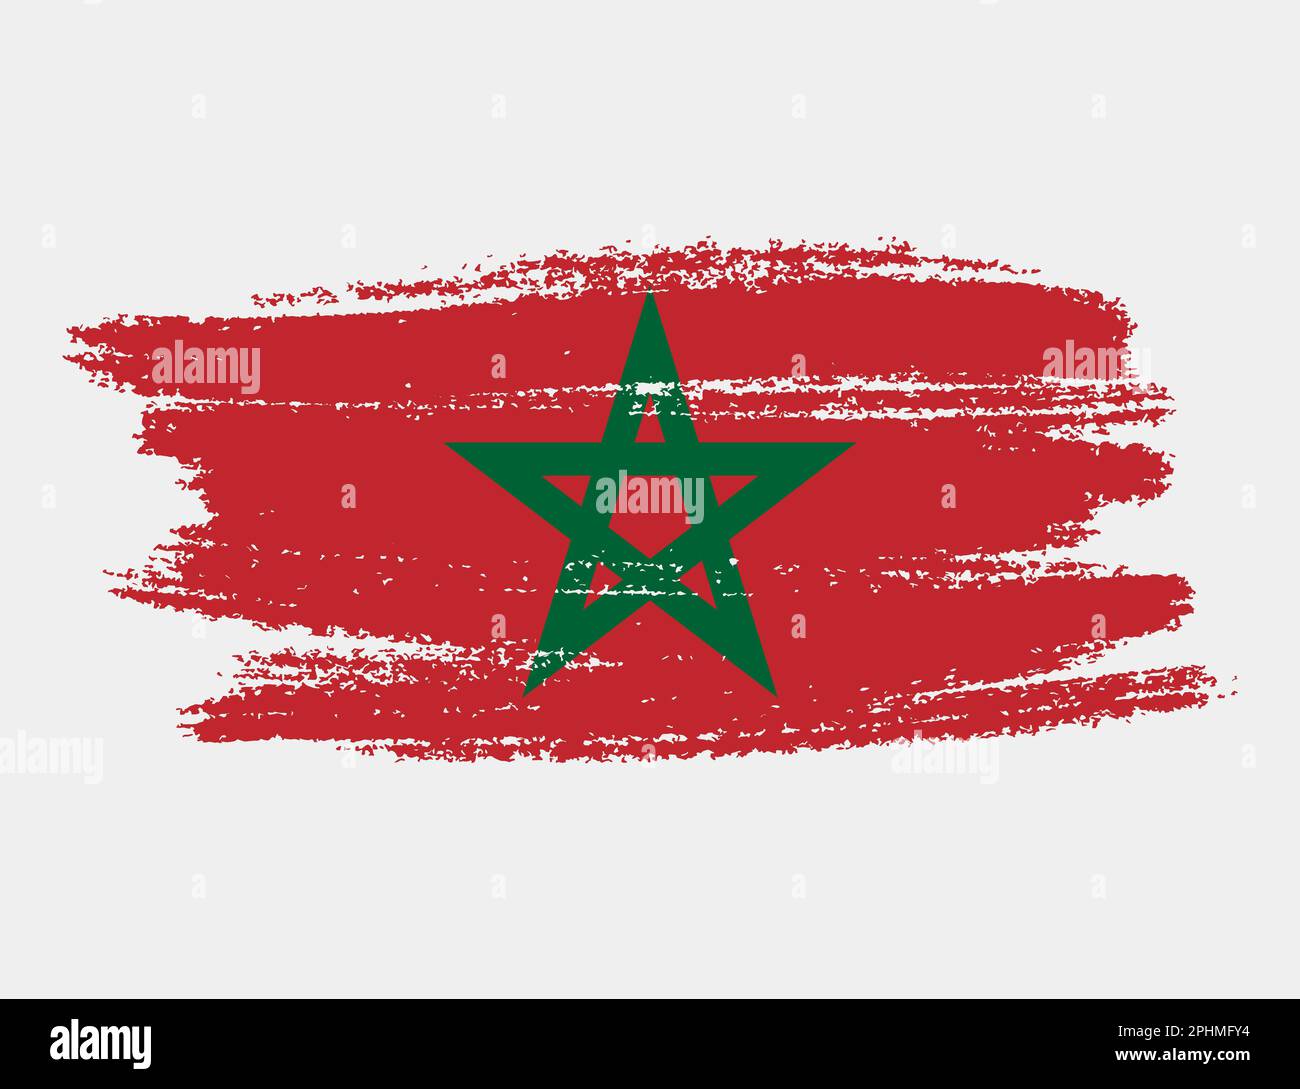 Grunge artistique drapeau brush du Maroc isolé sur fond blanc. Texture élégante du drapeau national Illustration de Vecteur